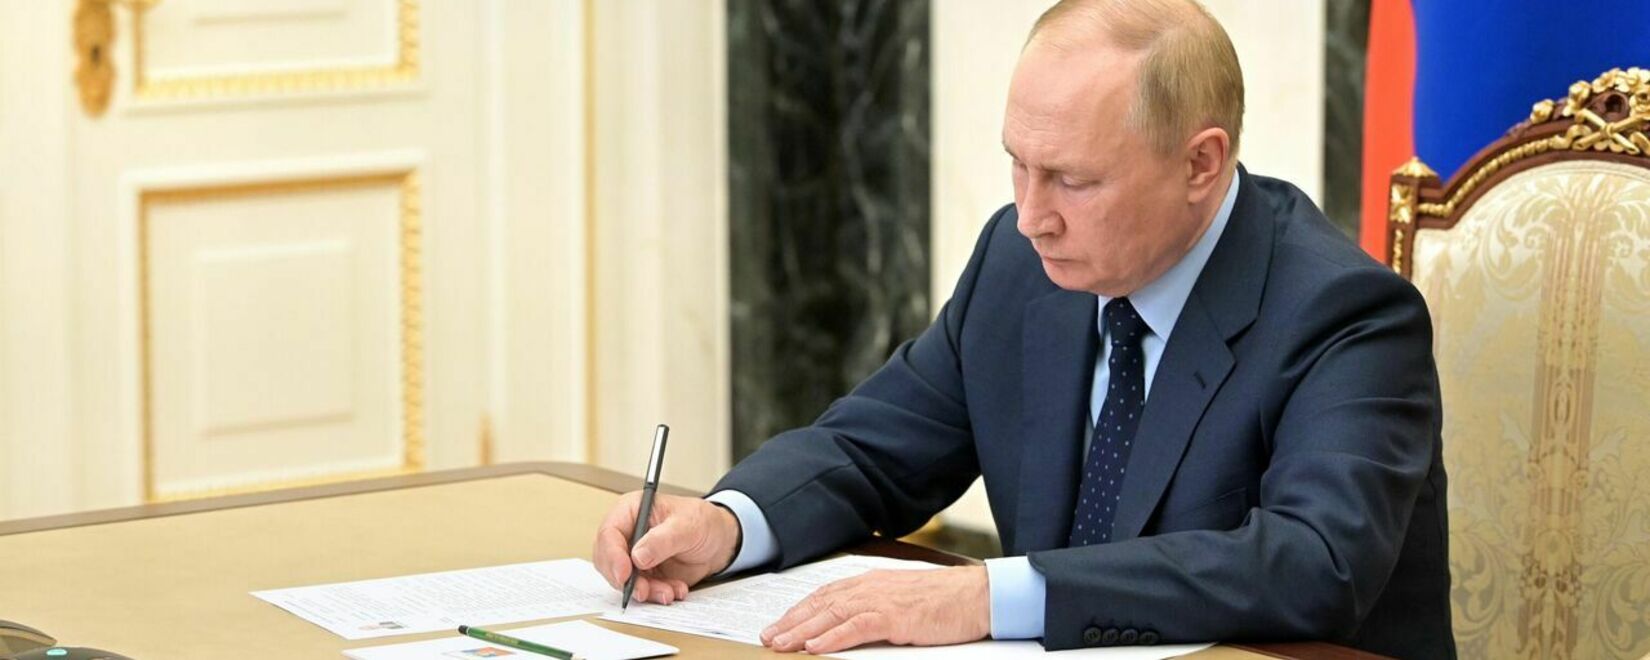 Путин подписал закон о размещении хранилищ удобрений в морских портах